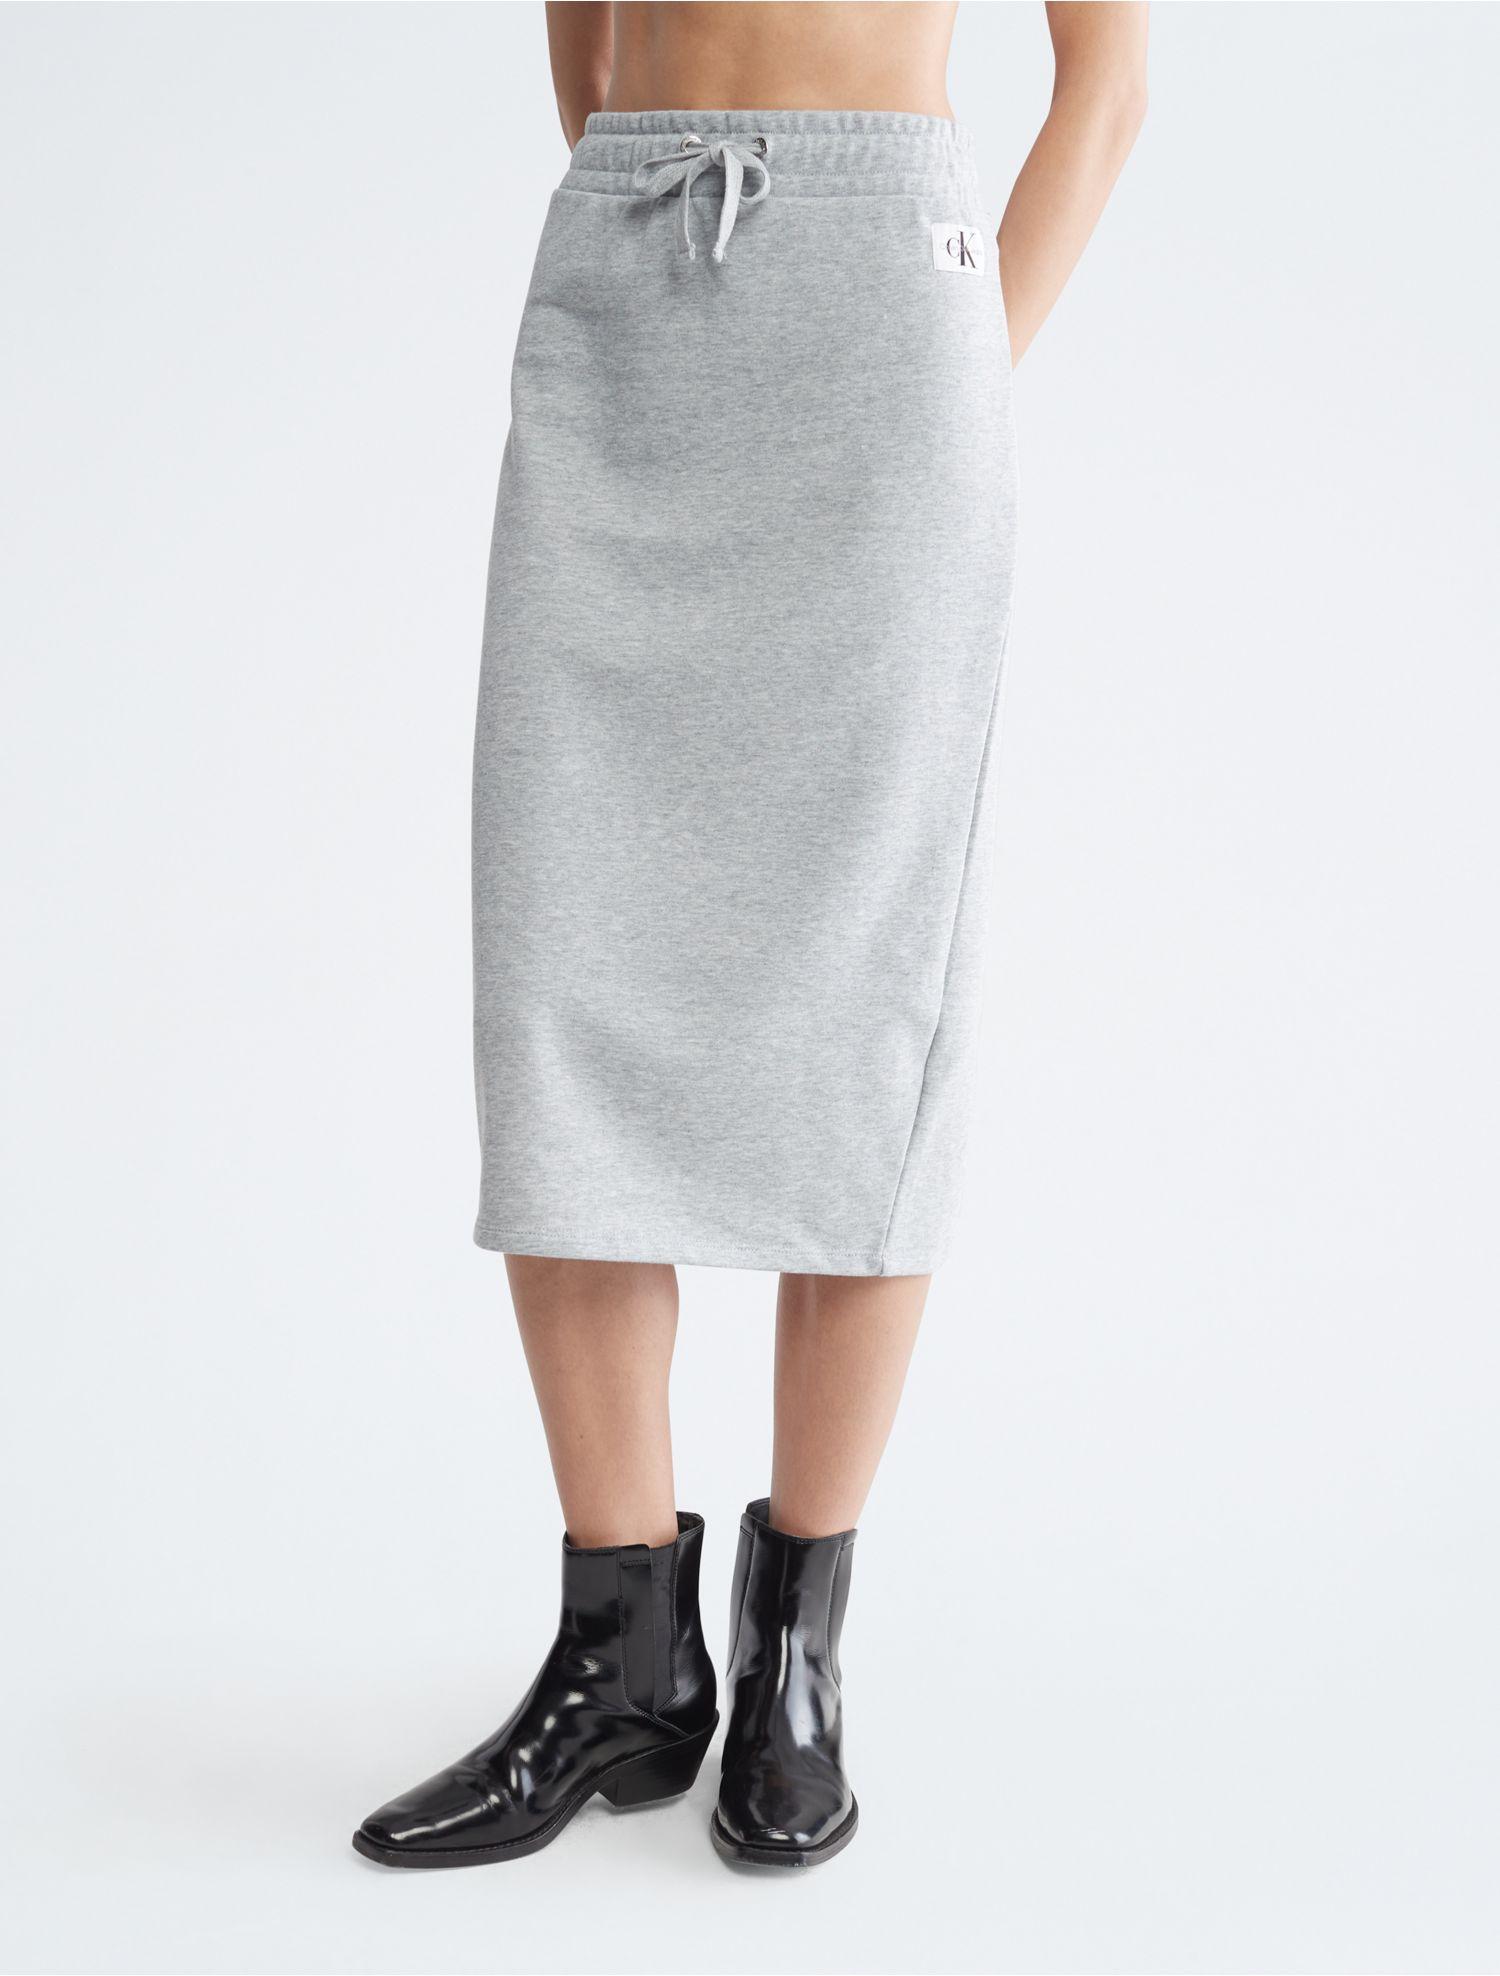 [Überraschender Preis realisiert! ] Calvin Klein Drawstring Midi in Gray Skirt Lyst 